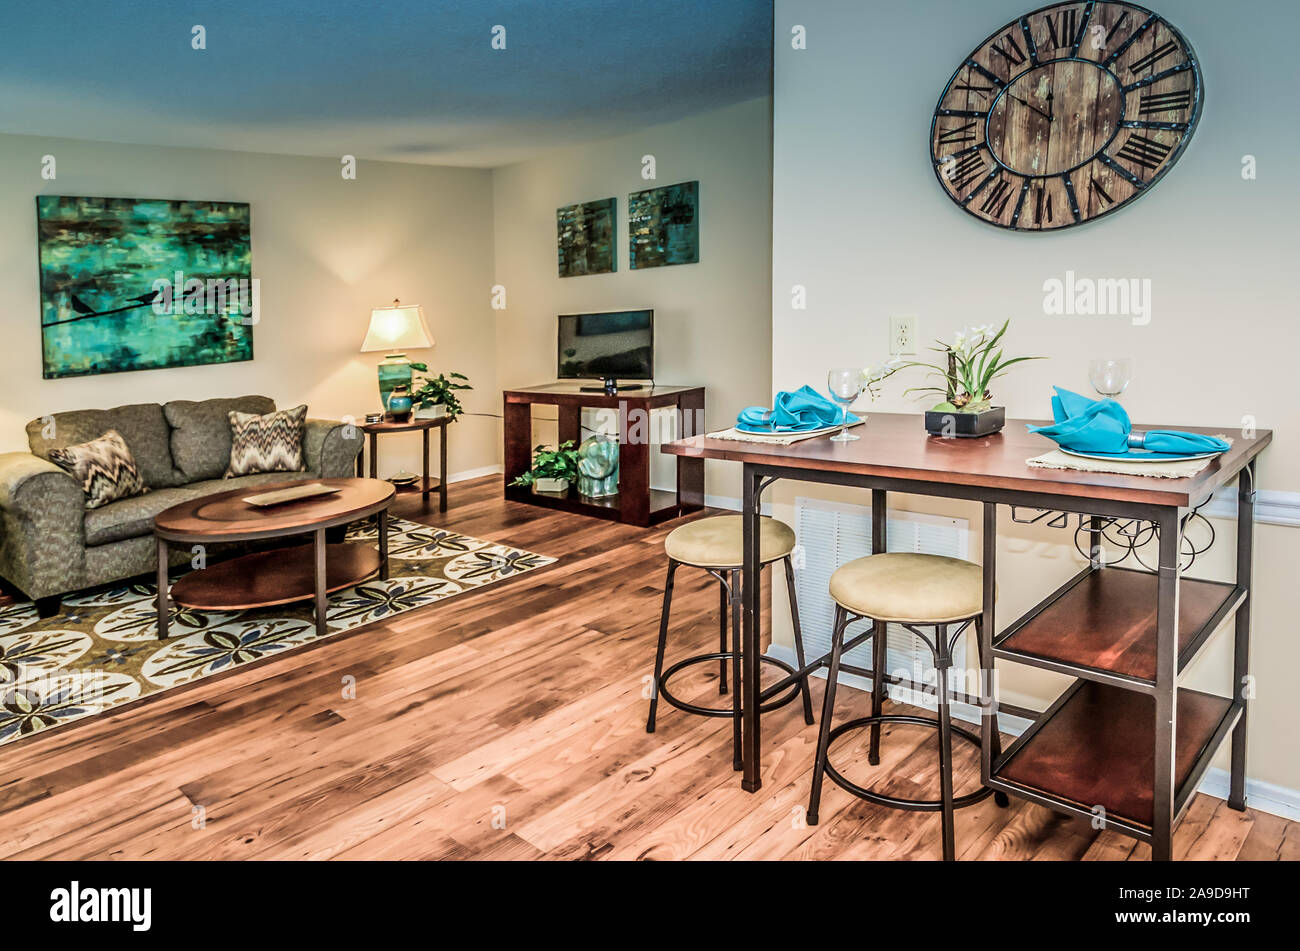 Eine offene Raumaufteilung bietet einfachen Zugang zwischen dem Esszimmer und Wohnzimmer im Herbst Wald Wohnung Wohnungen in Mobile, Alabama. Stockfoto